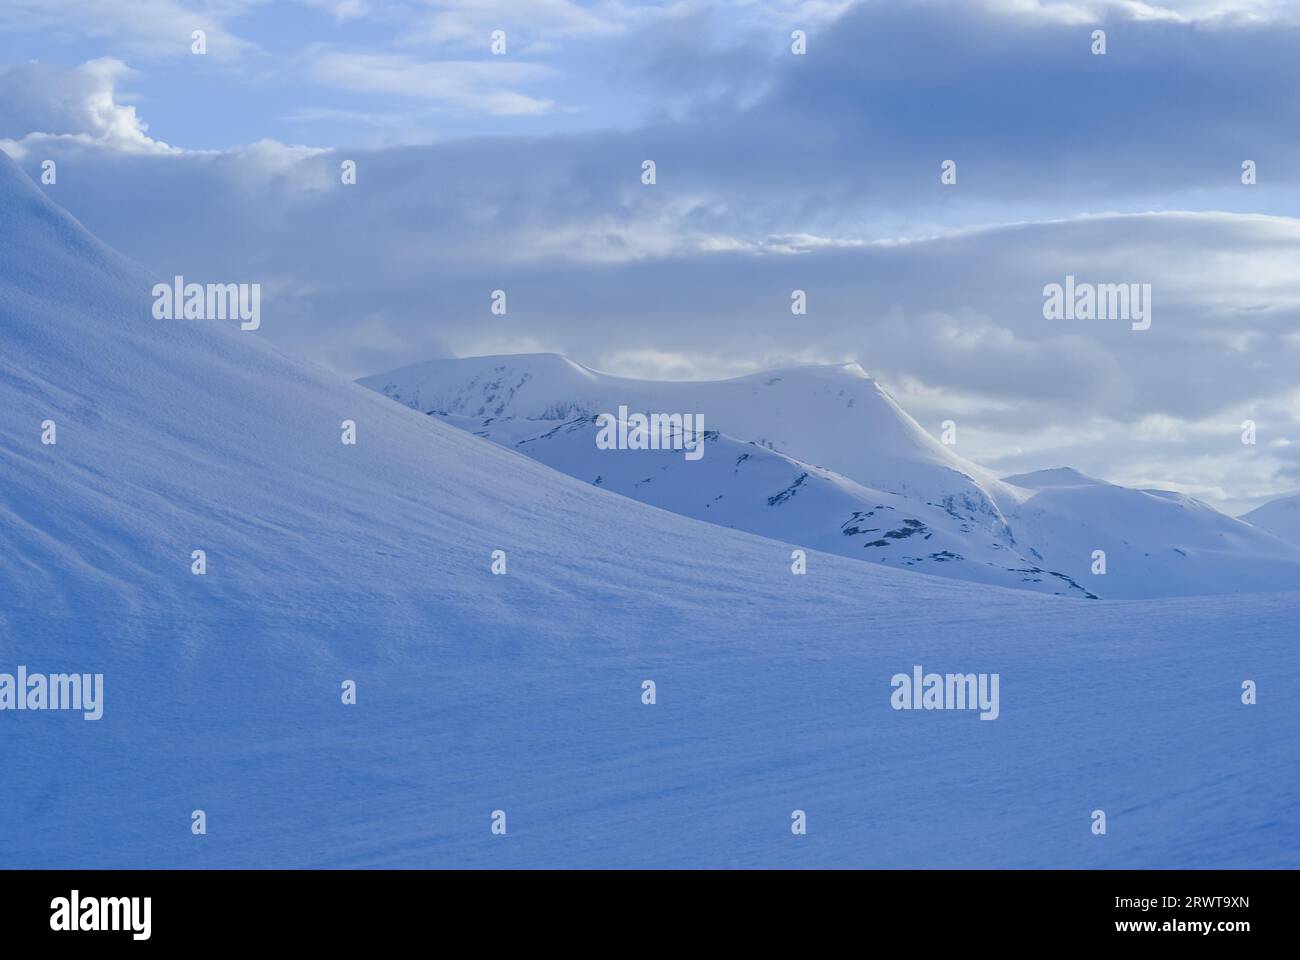 Photo des montagnes et des descentes couvertes de neige abondante à Volda en Norvège Banque D'Images